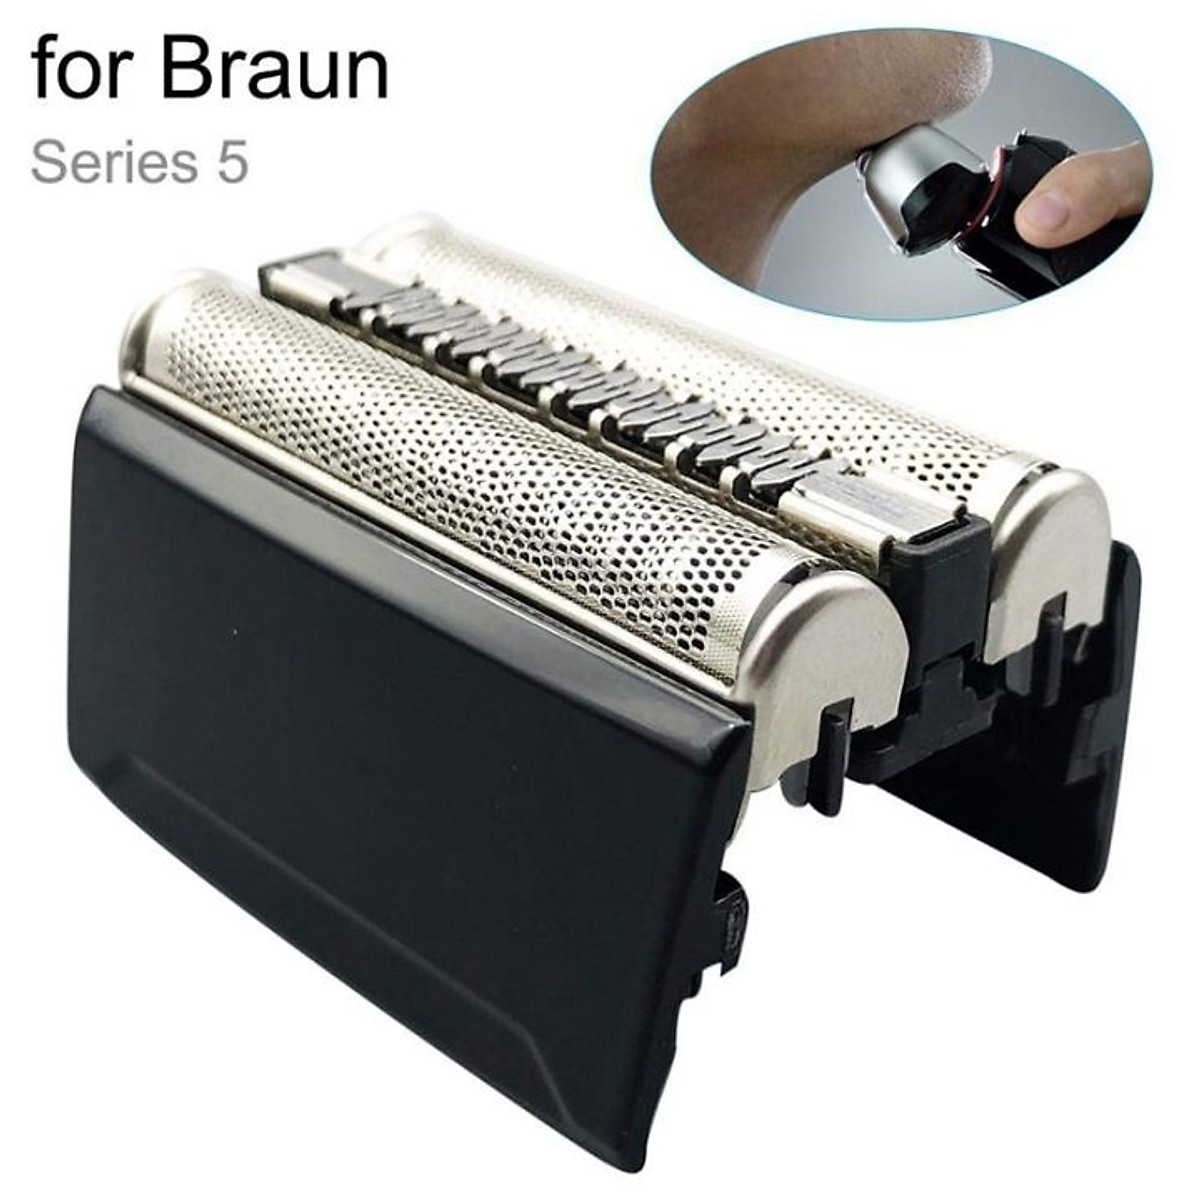 Đầu máy cạo râu điện 52B 52S thay thế cho Braun Series 5 5020, 5020S,5030